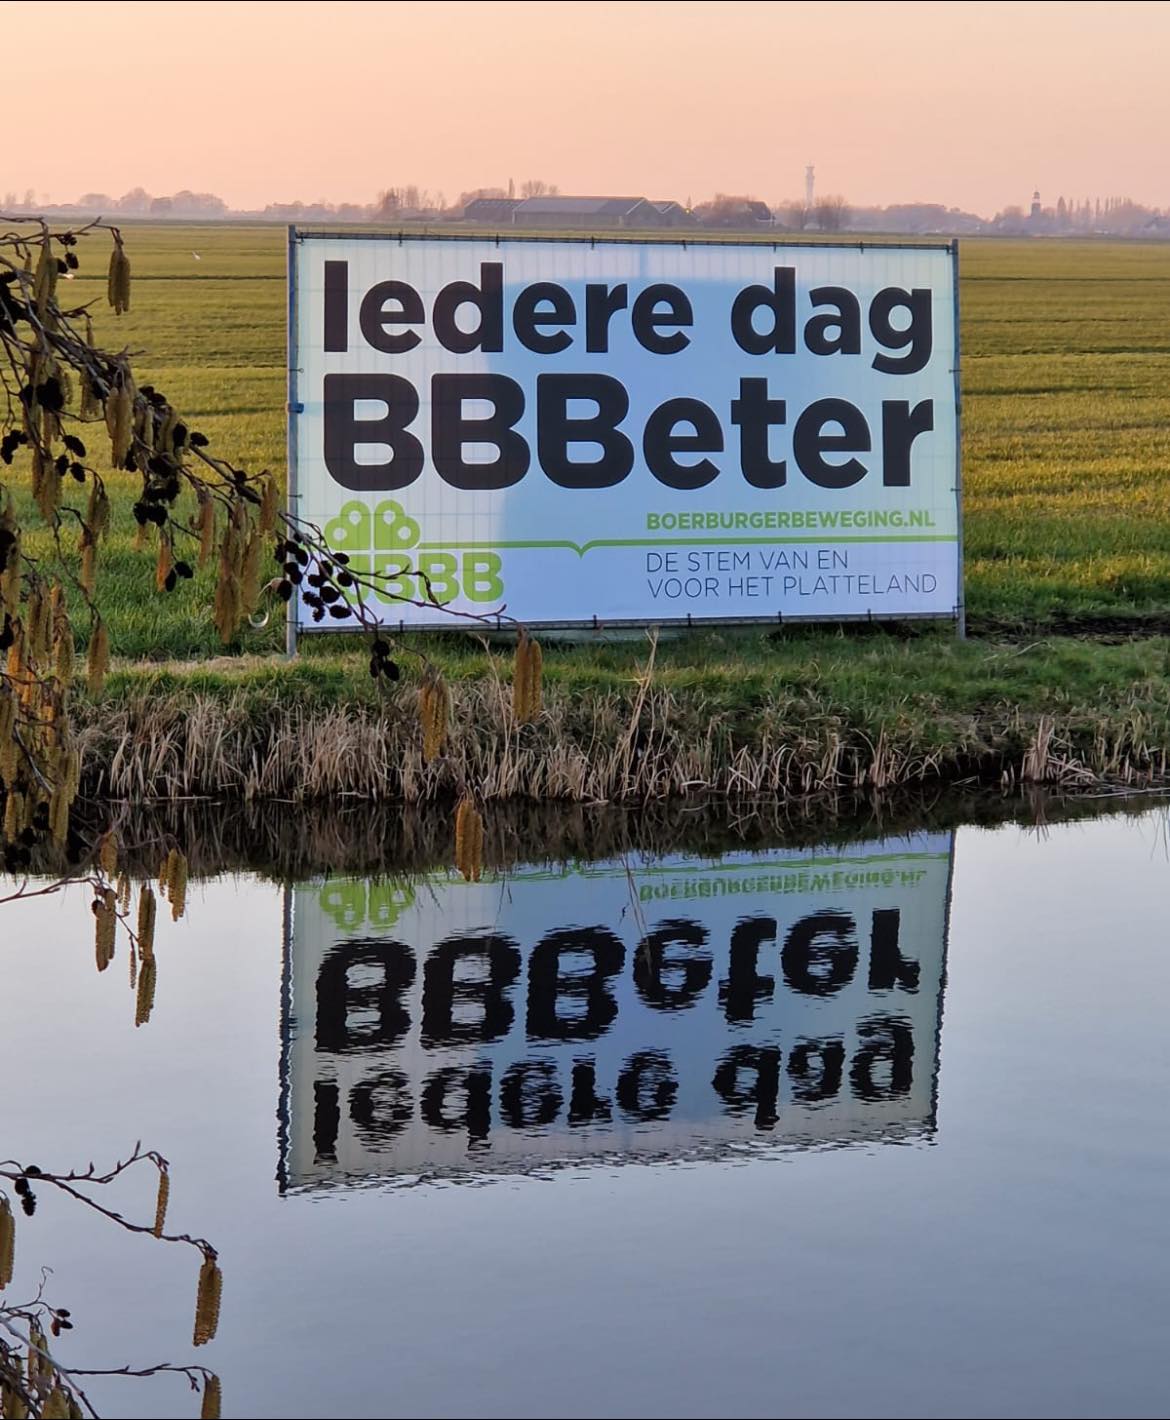 De parvenu Nederlandse Boerenpartij gaat vooruit, maar de weg is hobbelig ━ Europees conservatief